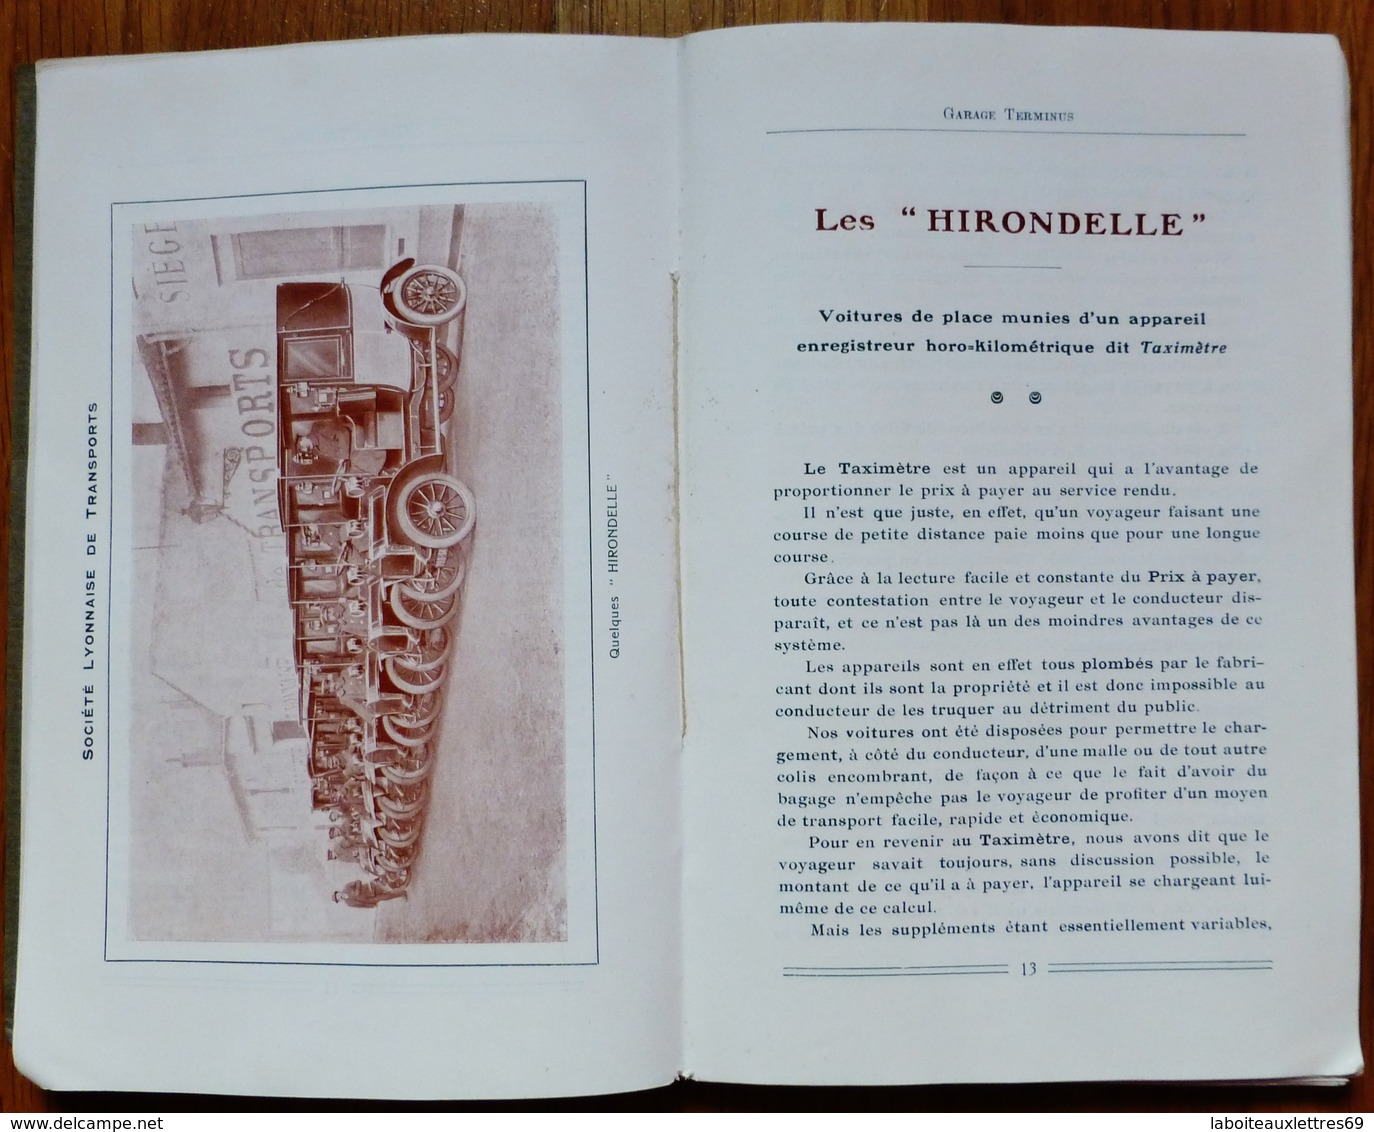 LIVRE PUBLICITAIRE SOCIETE LYONNAISE DE TRANSPORT - GARAGE TERMINUS LYON - 1911 - Advertising